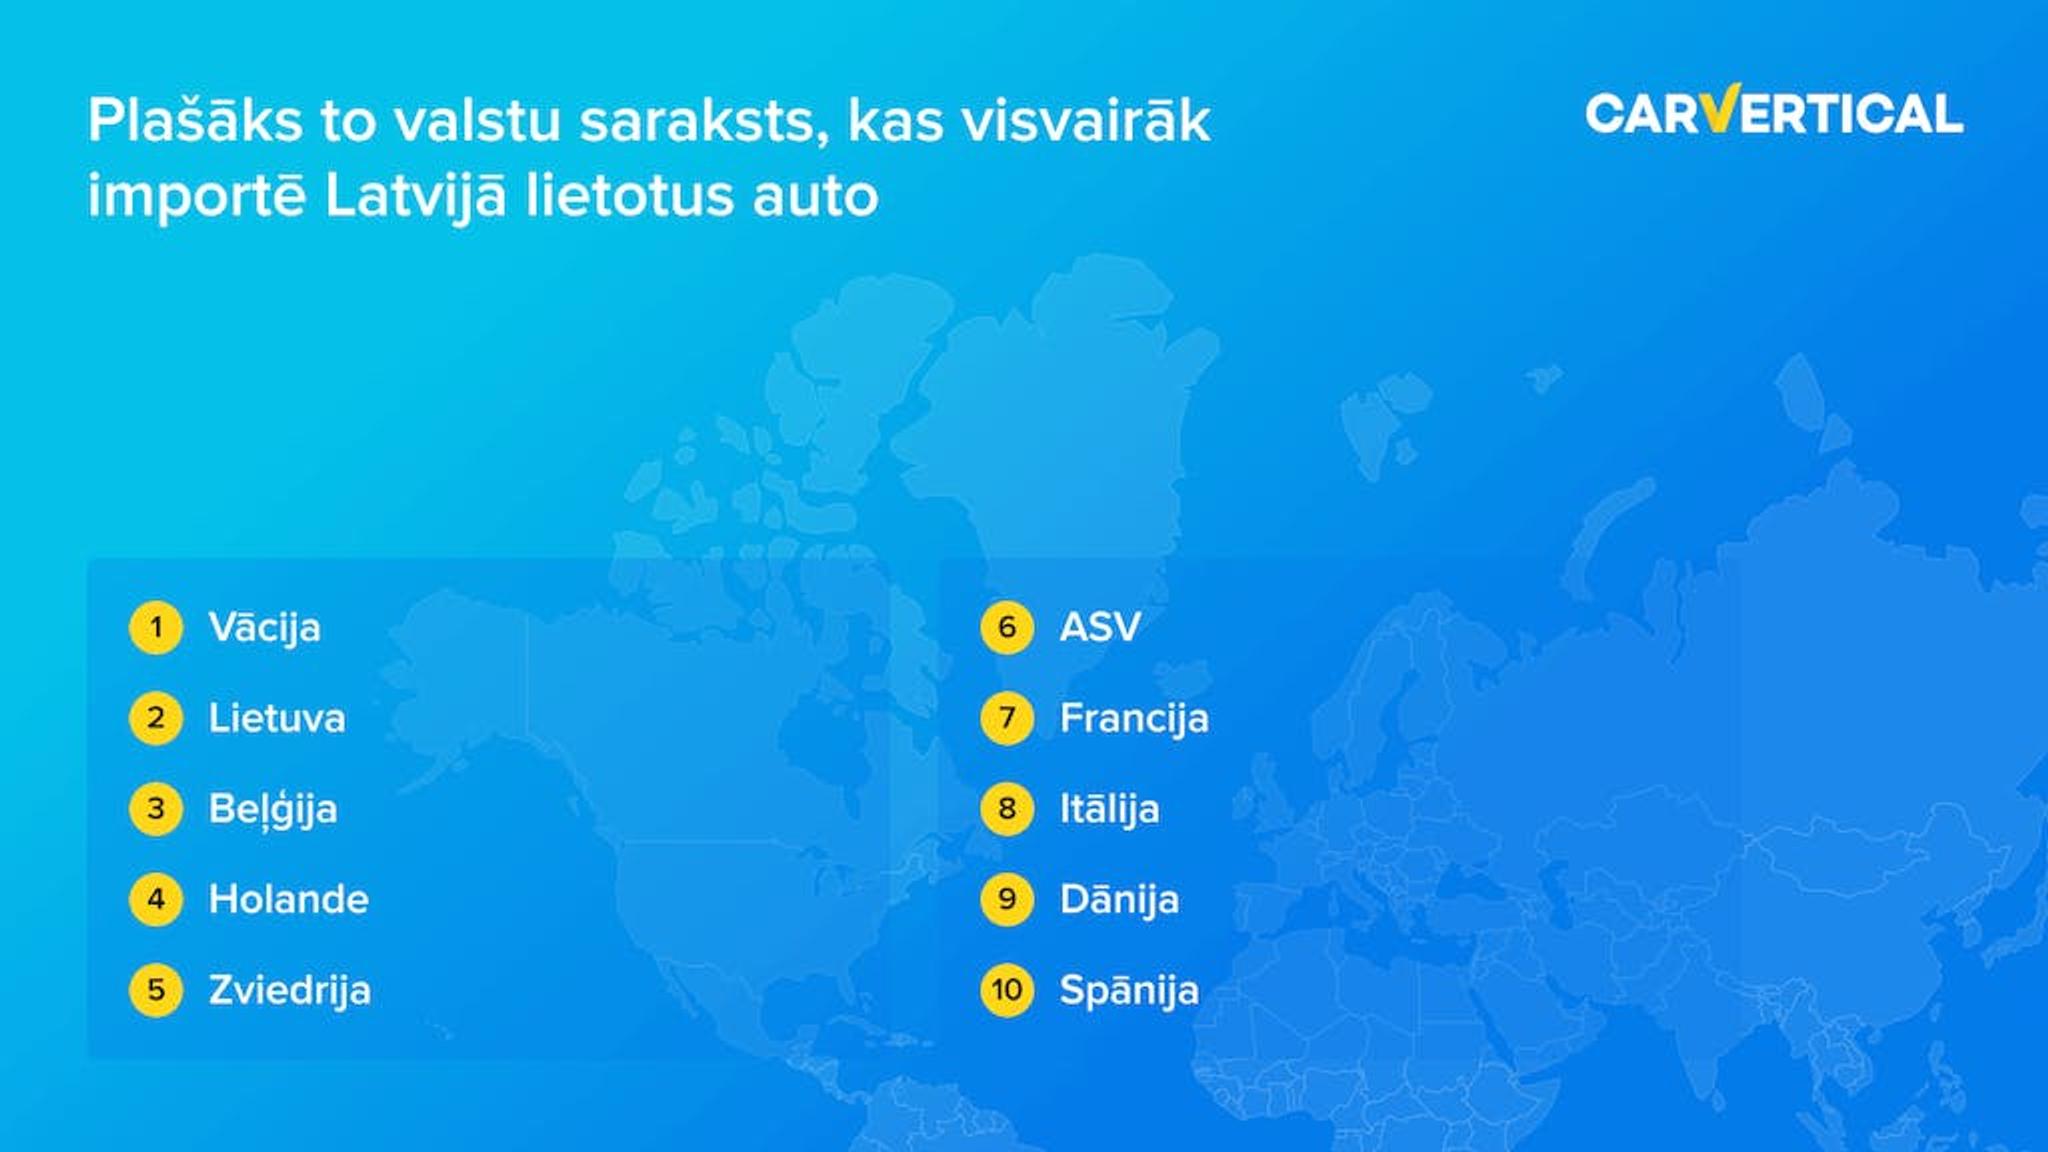 Plasaks to valstu saraksts, kas visvairak importe Latvija lietotus auto